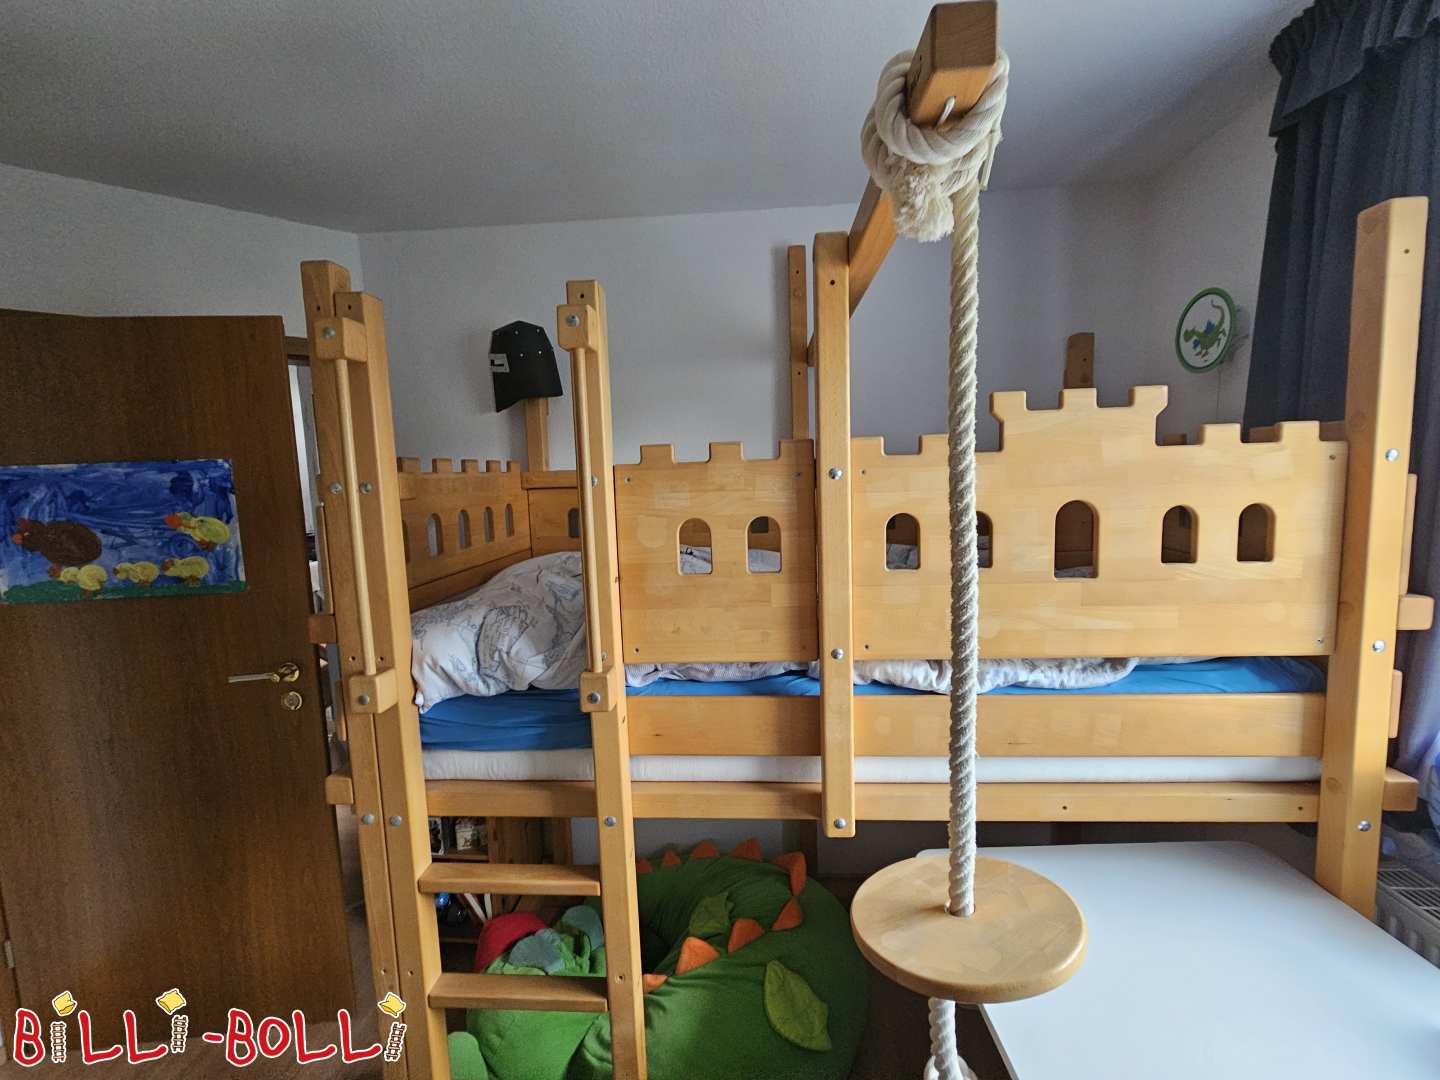 Palėpės lova, auganti su vaiku, 90x190, buko aliejaus vaškas, riterio pilies lova (Varel) (Kategorija: Palėpės lova auga kartu su vaiku used)